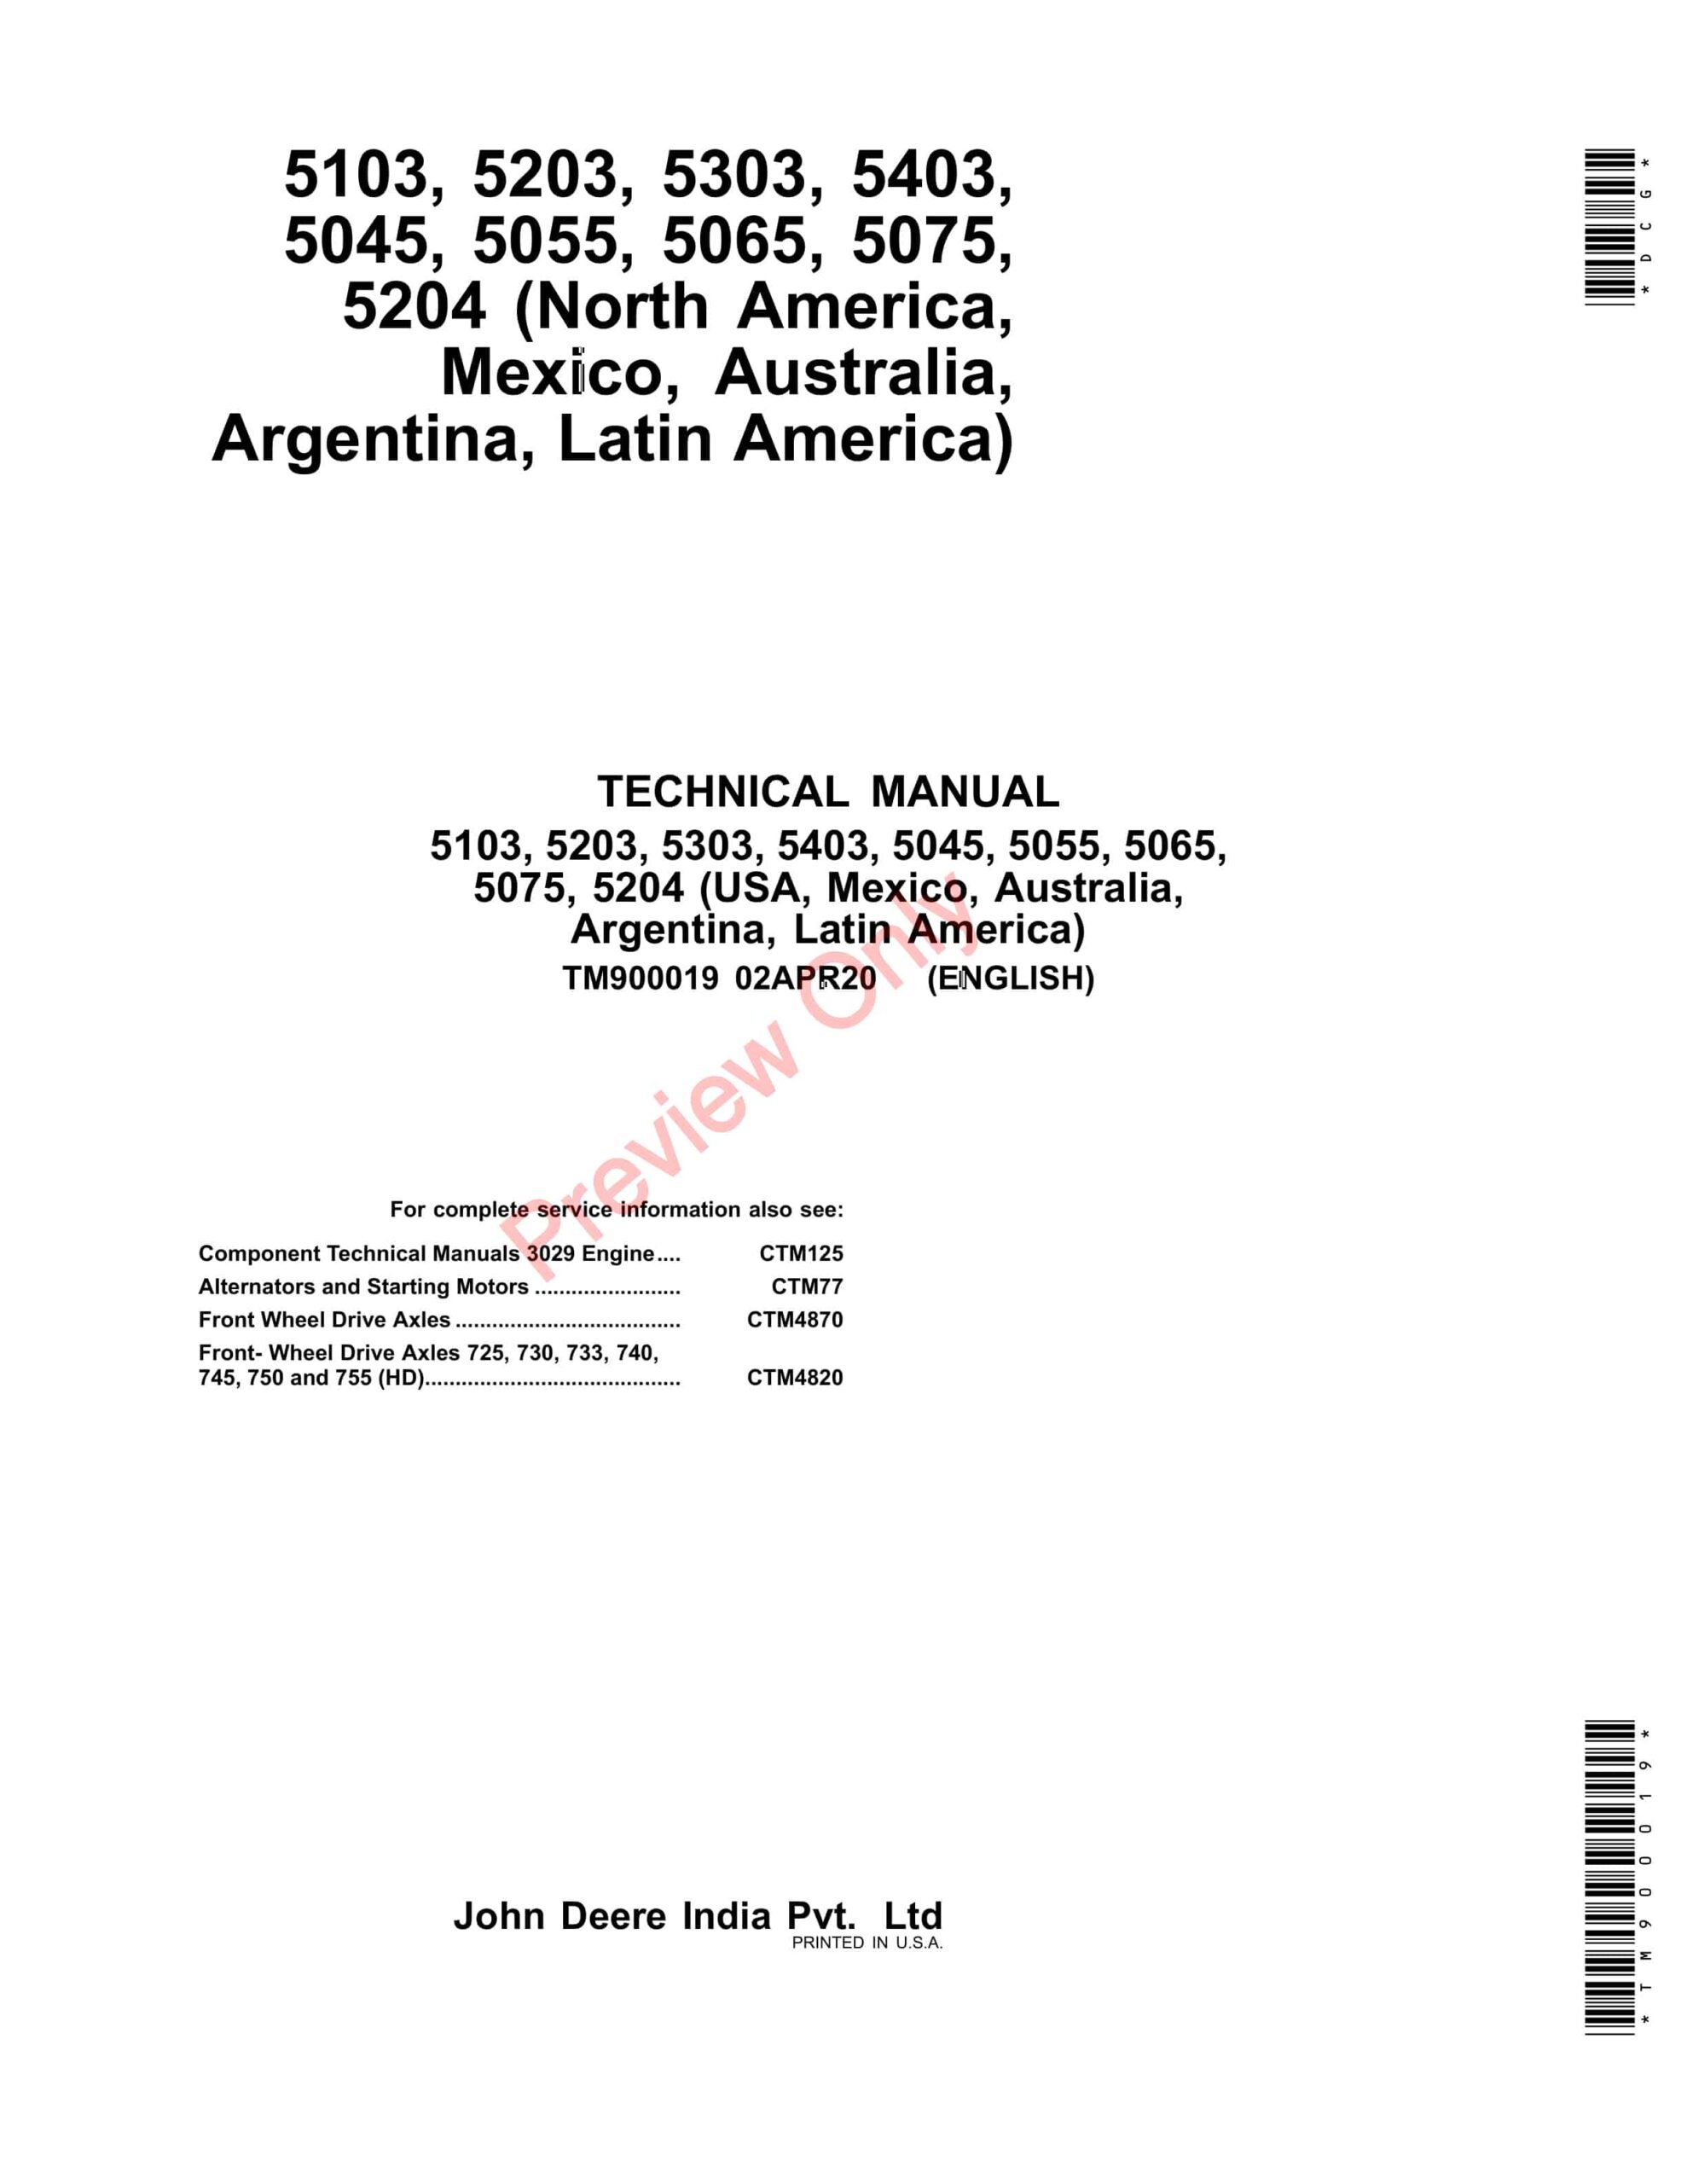 John Deere 5045D, 5045E, 5055D, 5055E, 5065E, 5075E, 5103, 5203, 5204, 5303, 5403, 5503 Tractors Component Technical Manuals TM900019 02APR20-1